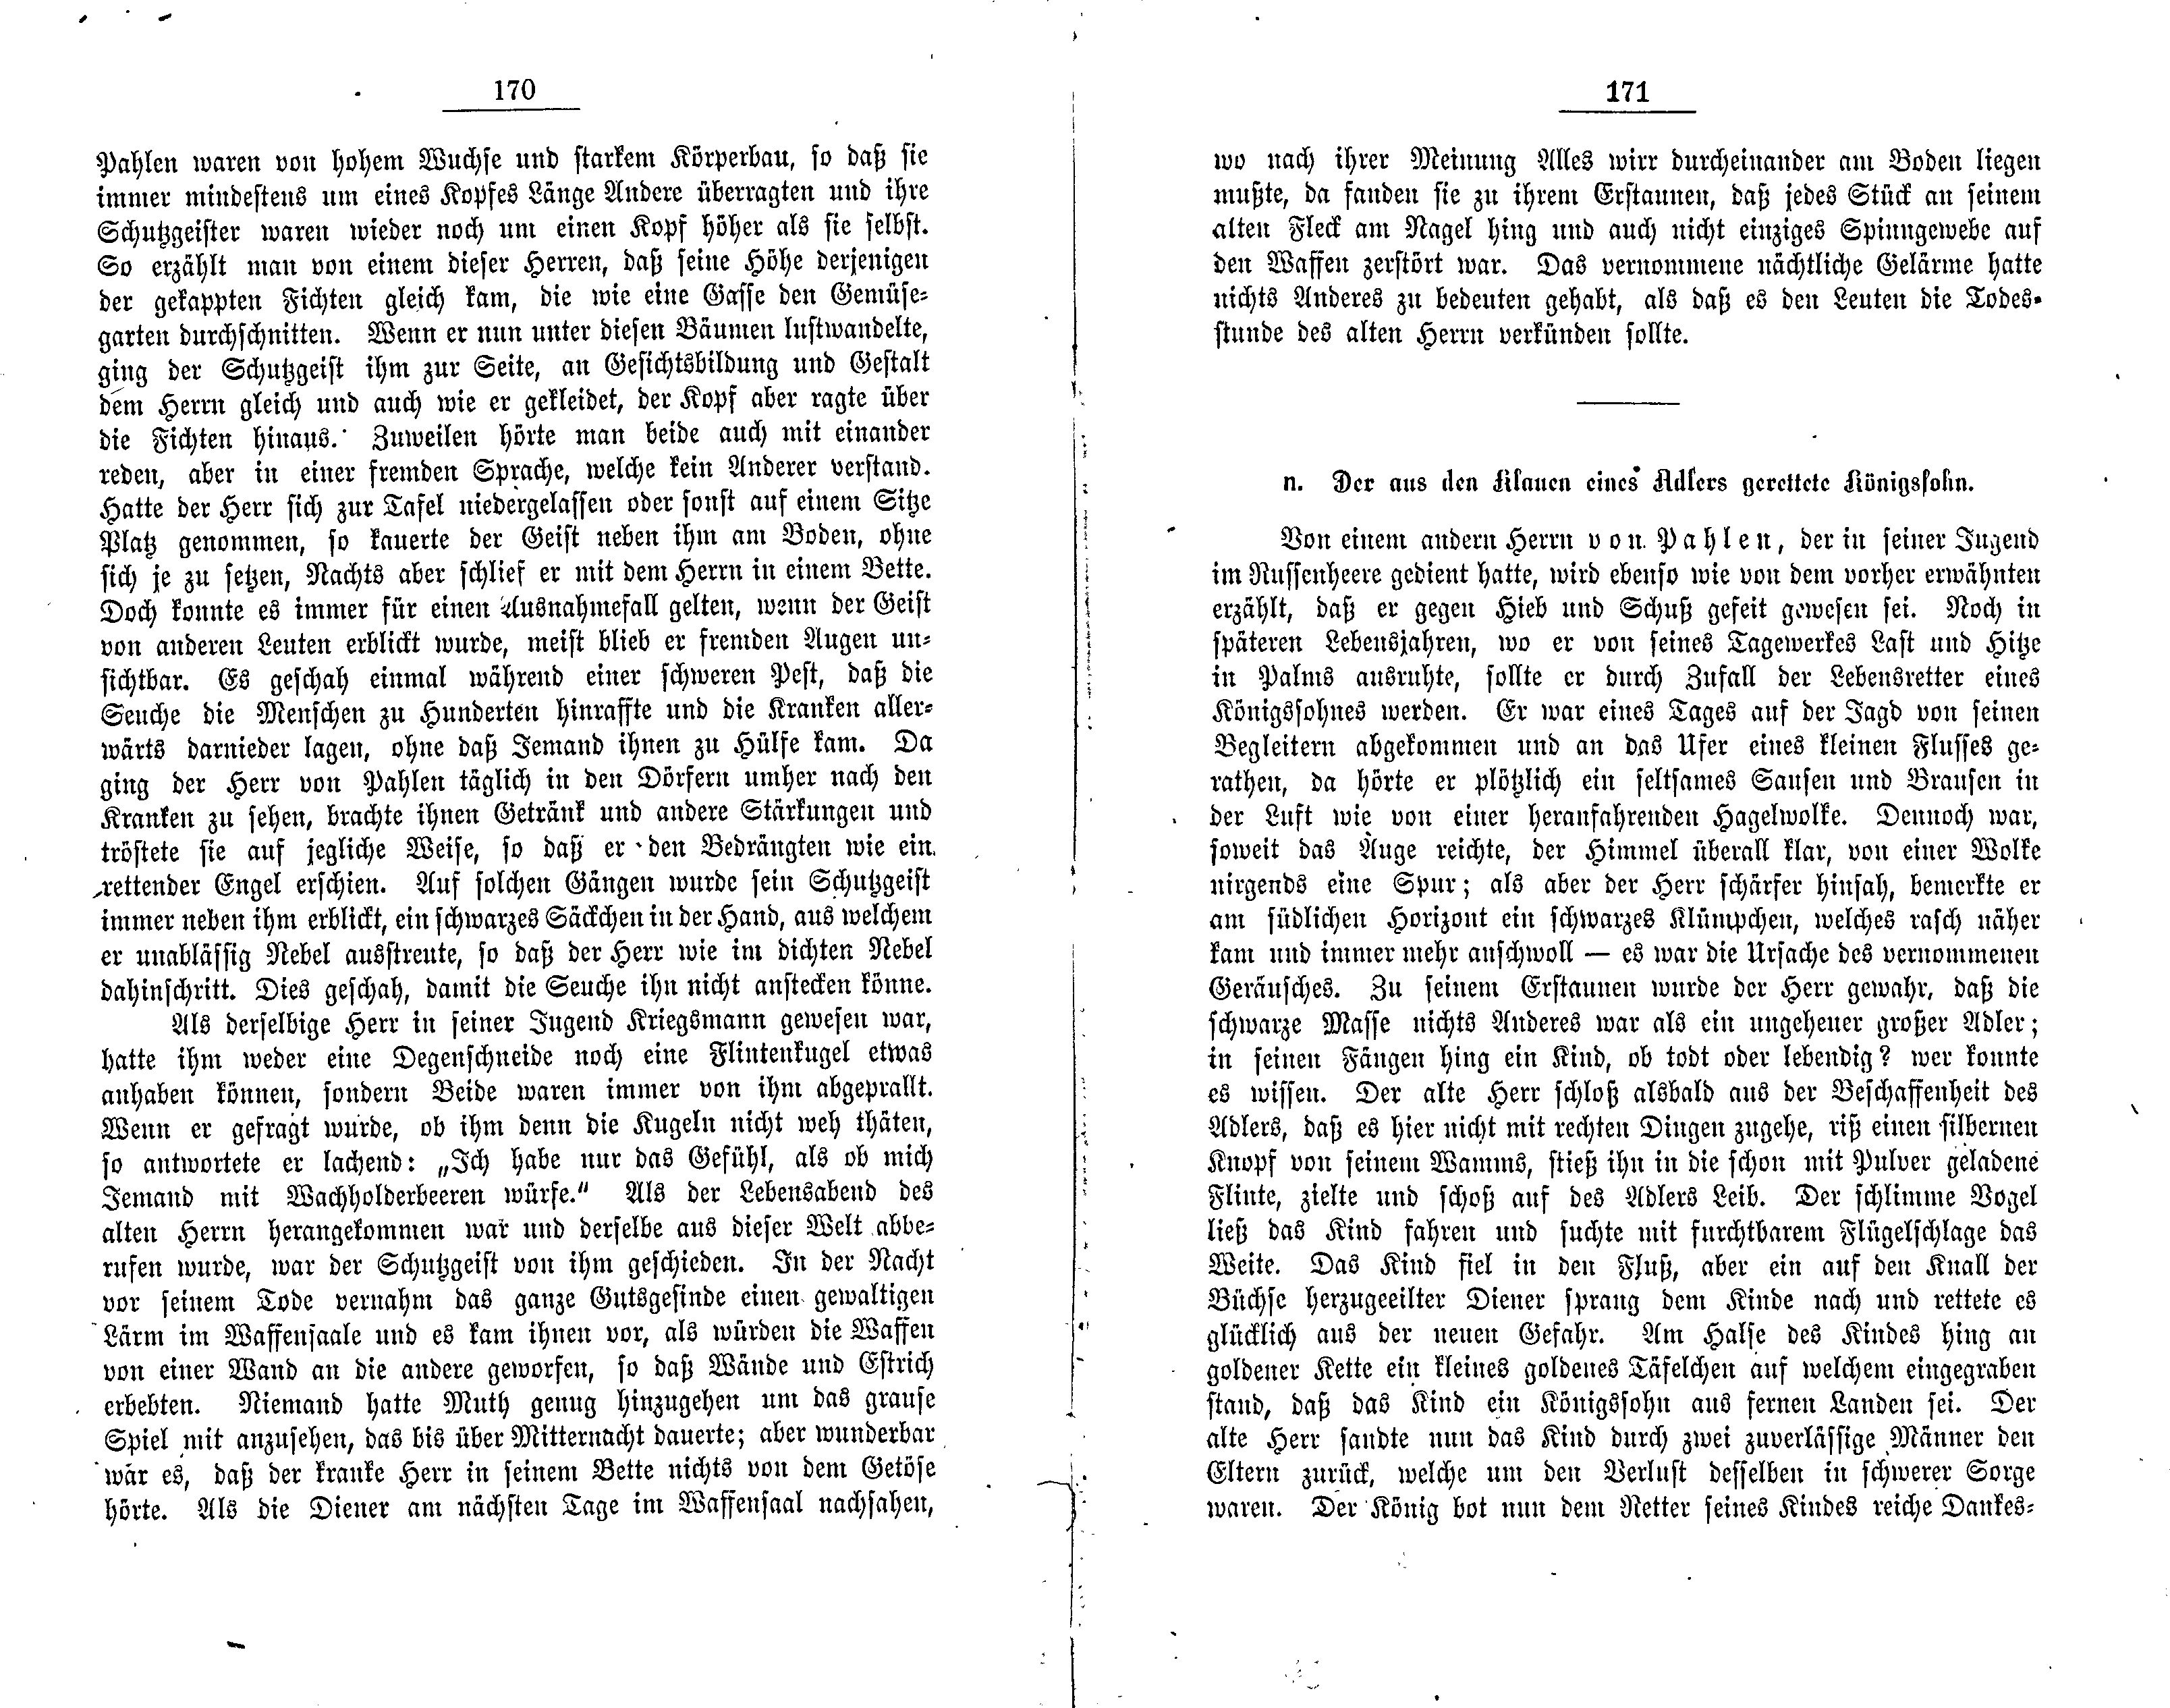 Der aus den klauen eines Adlers gerettete Königssohn (1881) | 1. (170-171) Haupttext